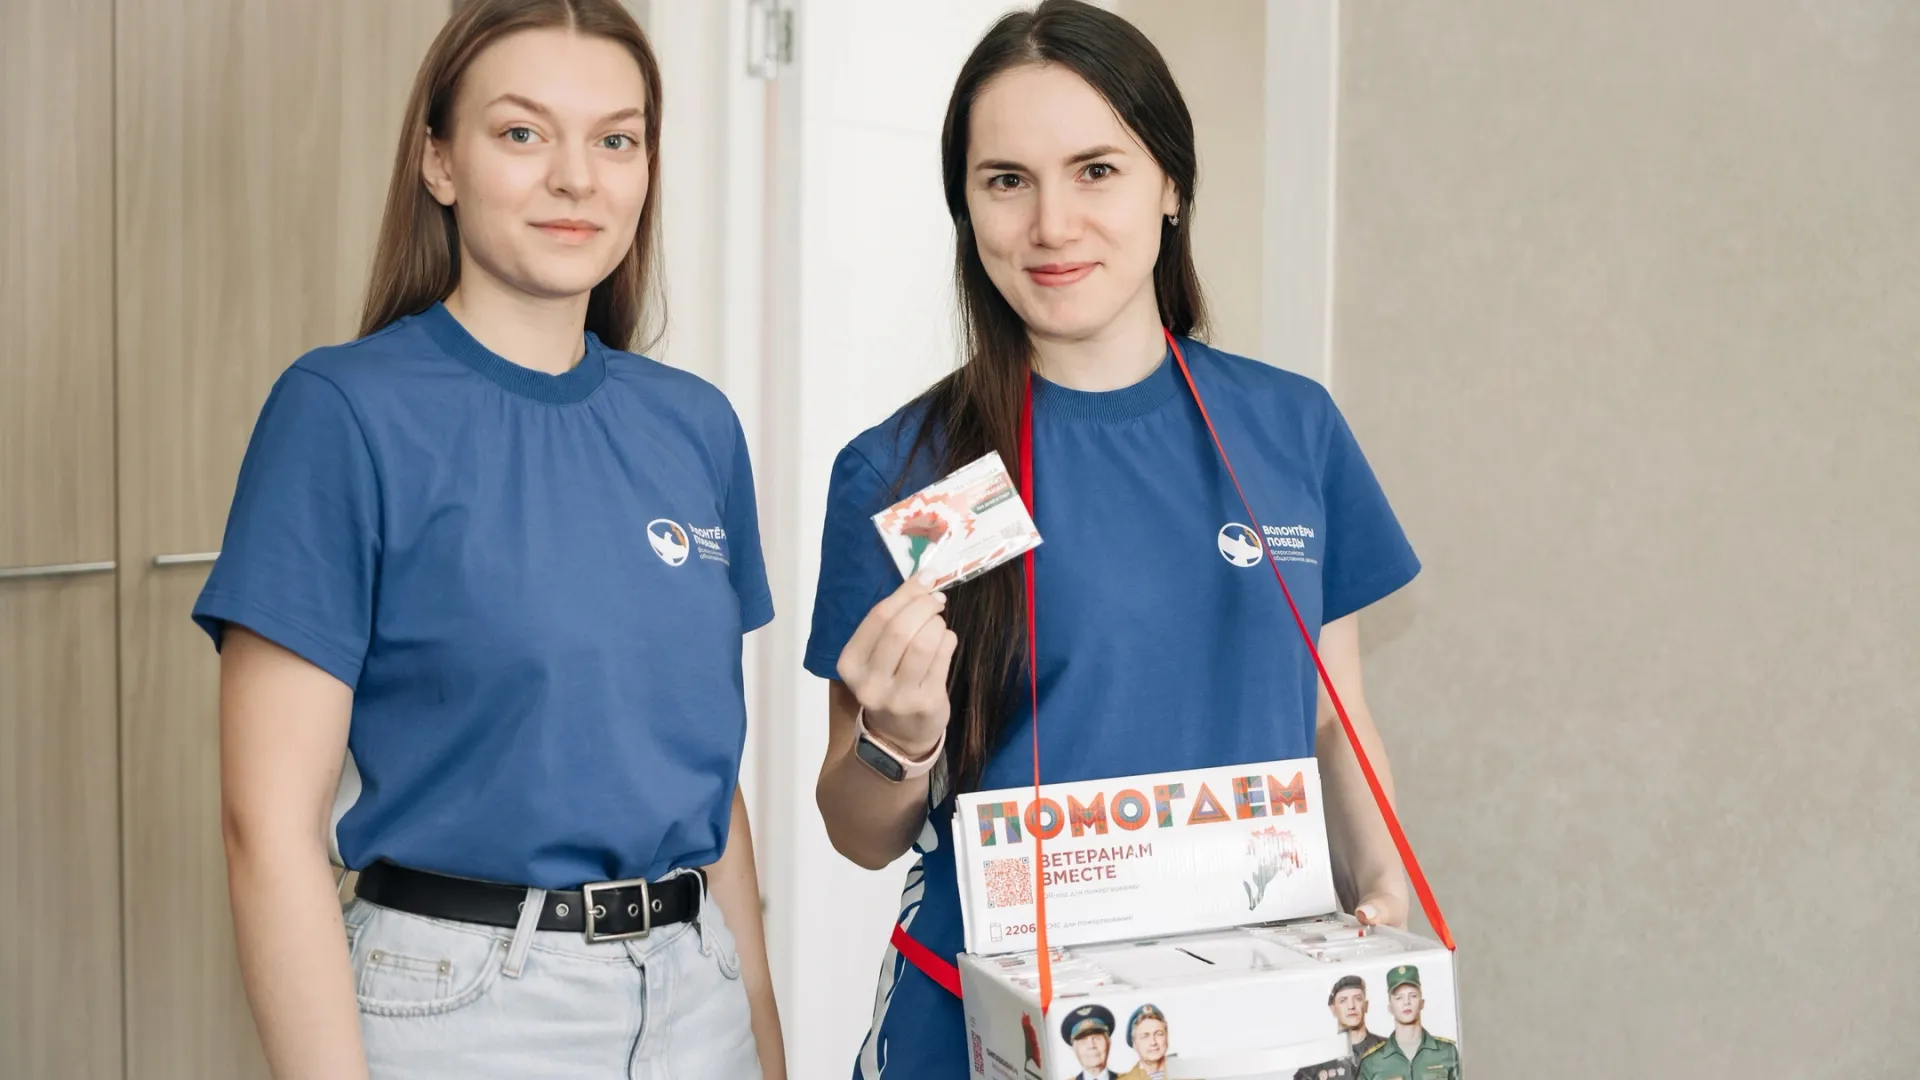 Участники благотворительной акции получат от волонтеров специальный значок. Фото: vk.com/yanaozapobedu